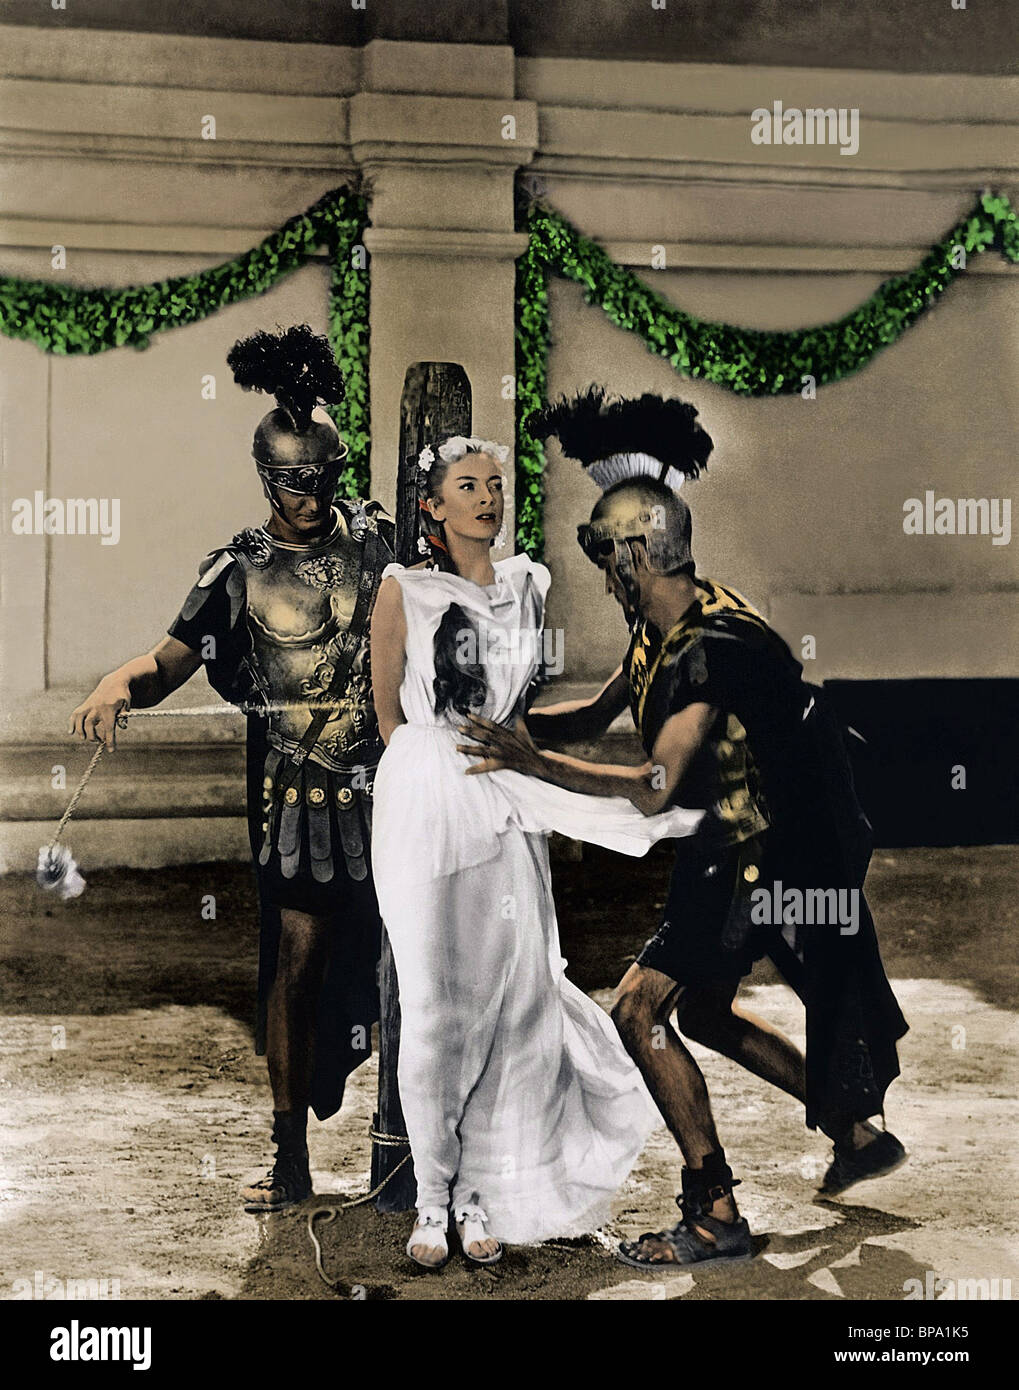 FILM POSTER QUO VADIS (1951 Stock Photo - Alamy